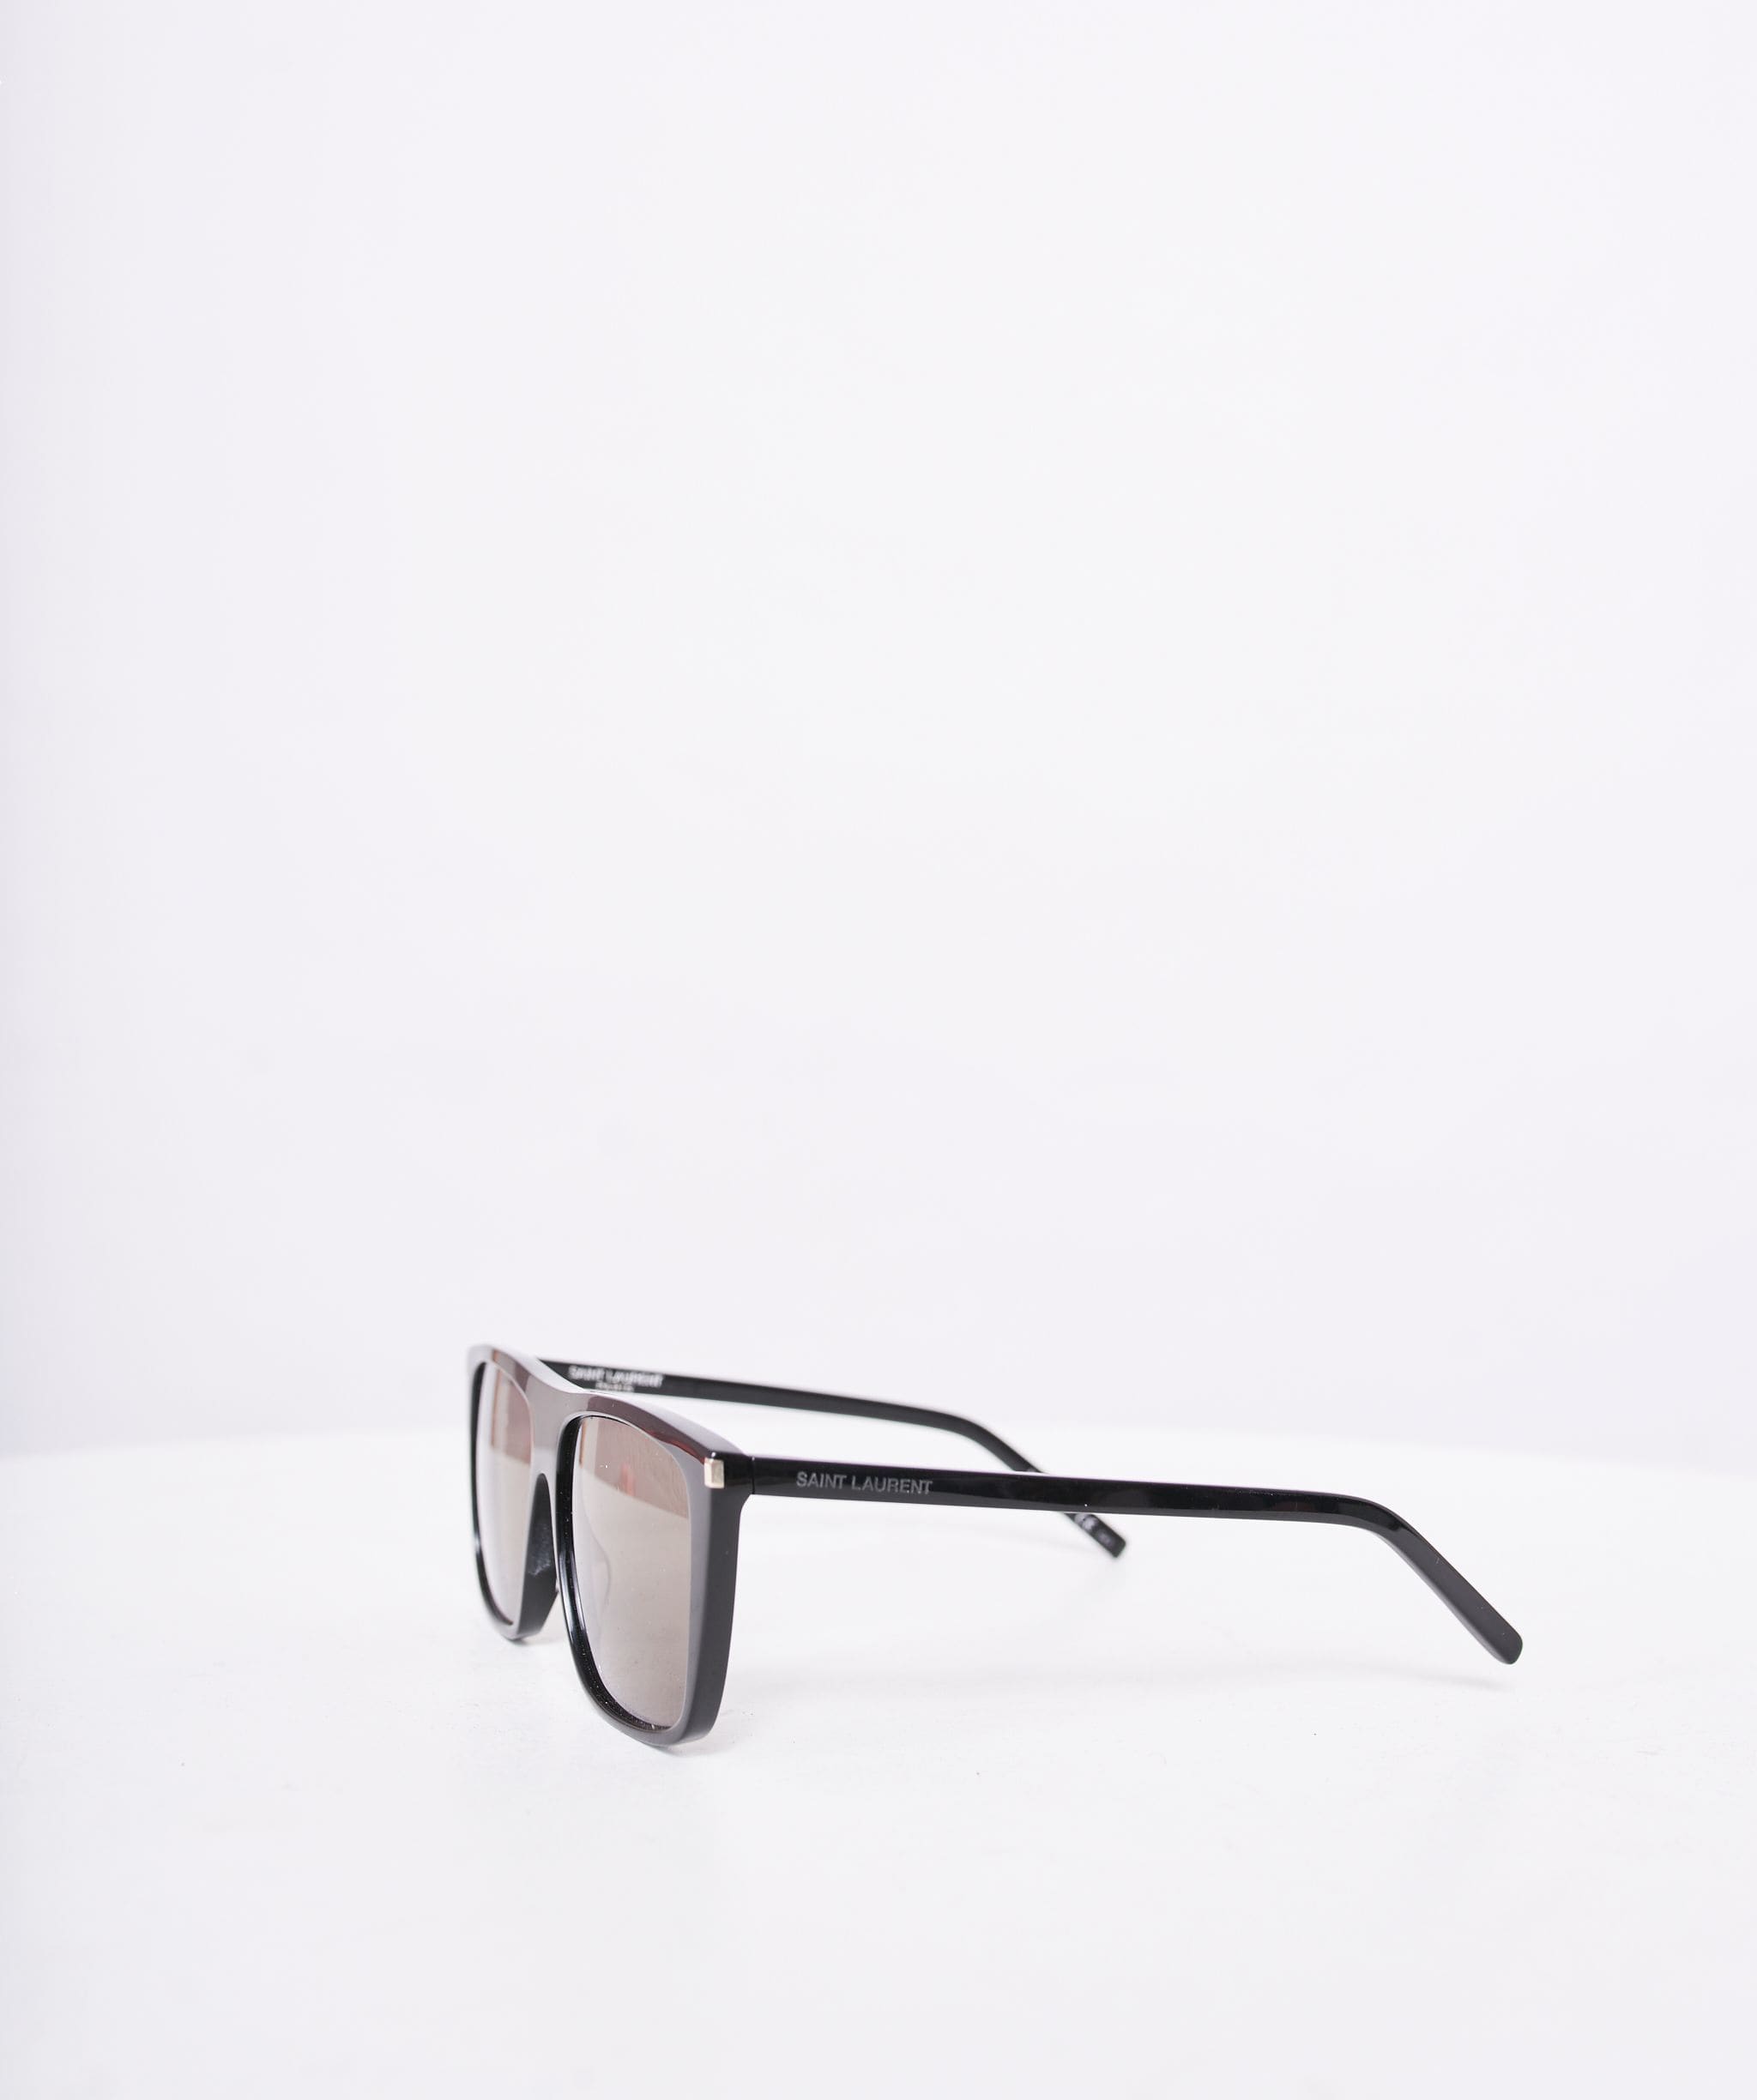 Yves Saint Laurent Saint Laurent Black Frame Square Aviator Sunglasses AWL1012